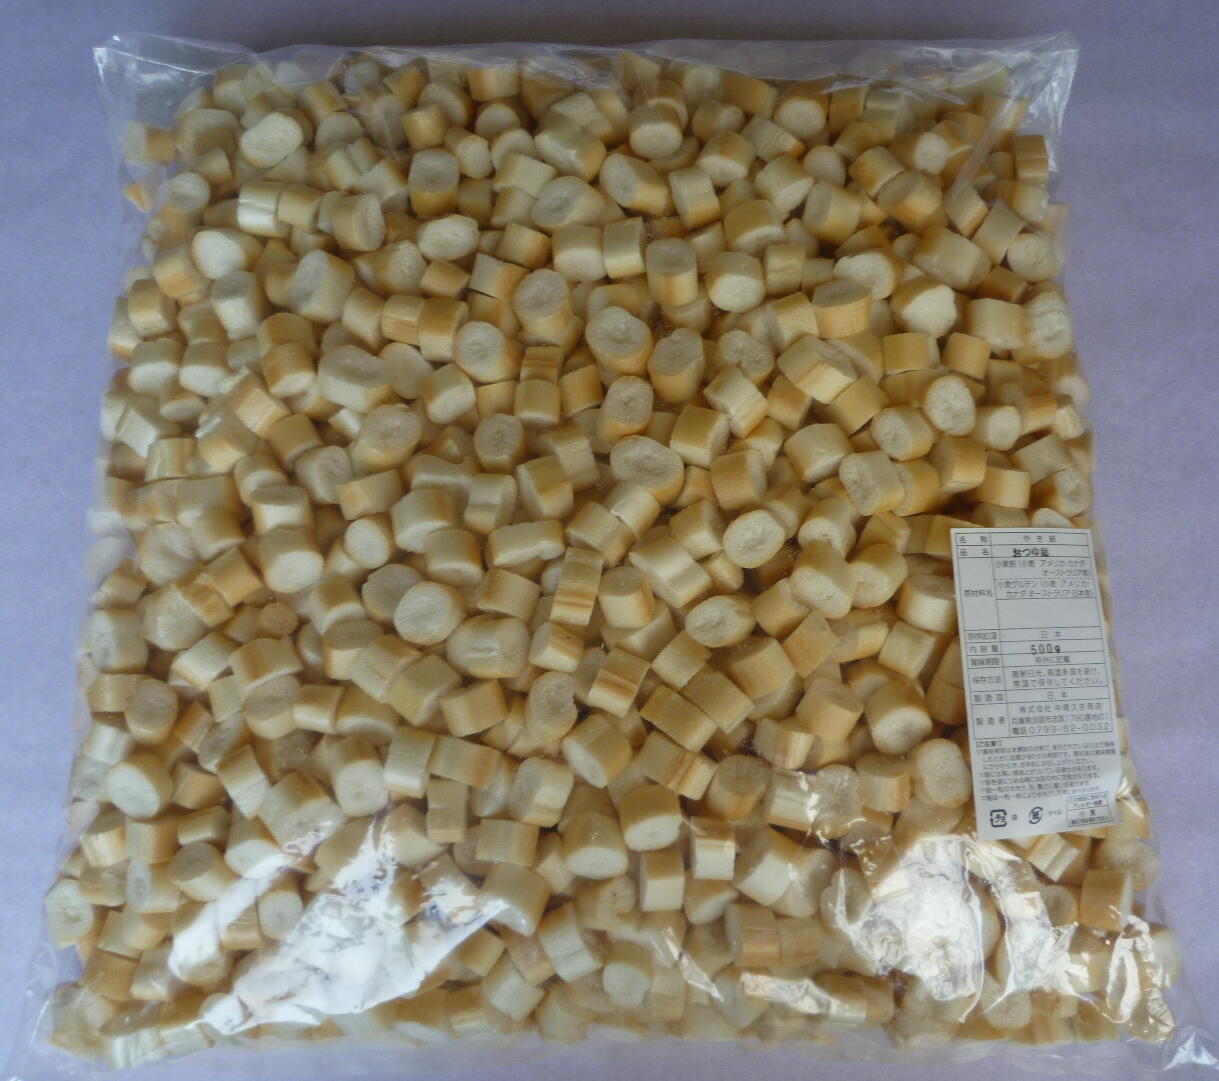 原材料は、輸入小麦を日本で製粉した小麦粉と、日本で製造した小麦グルテンです。 品質管理のもと小麦粉と小麦グルテンとを練り合わせ高温で焼麸を製造、おいしさと安全を追求し焼き上げた植物性蛋白質を多く含んだ自然食品です。 小麦粉の配合を多くして焼き上げているので、1粒の重さは重くなっています。 用途：みそ汁・お吸い物・酢の物・すきやき・煮物・鍋物・うどん・ソーメン・たまご丼等 ※※商品画像はイメージです。 メーカー都合等により、予告なくパッケージ、仕様（原材料、生産国、色、形状、サイズ等）の変更がある場合がございます。 あらかじめご了承ください。